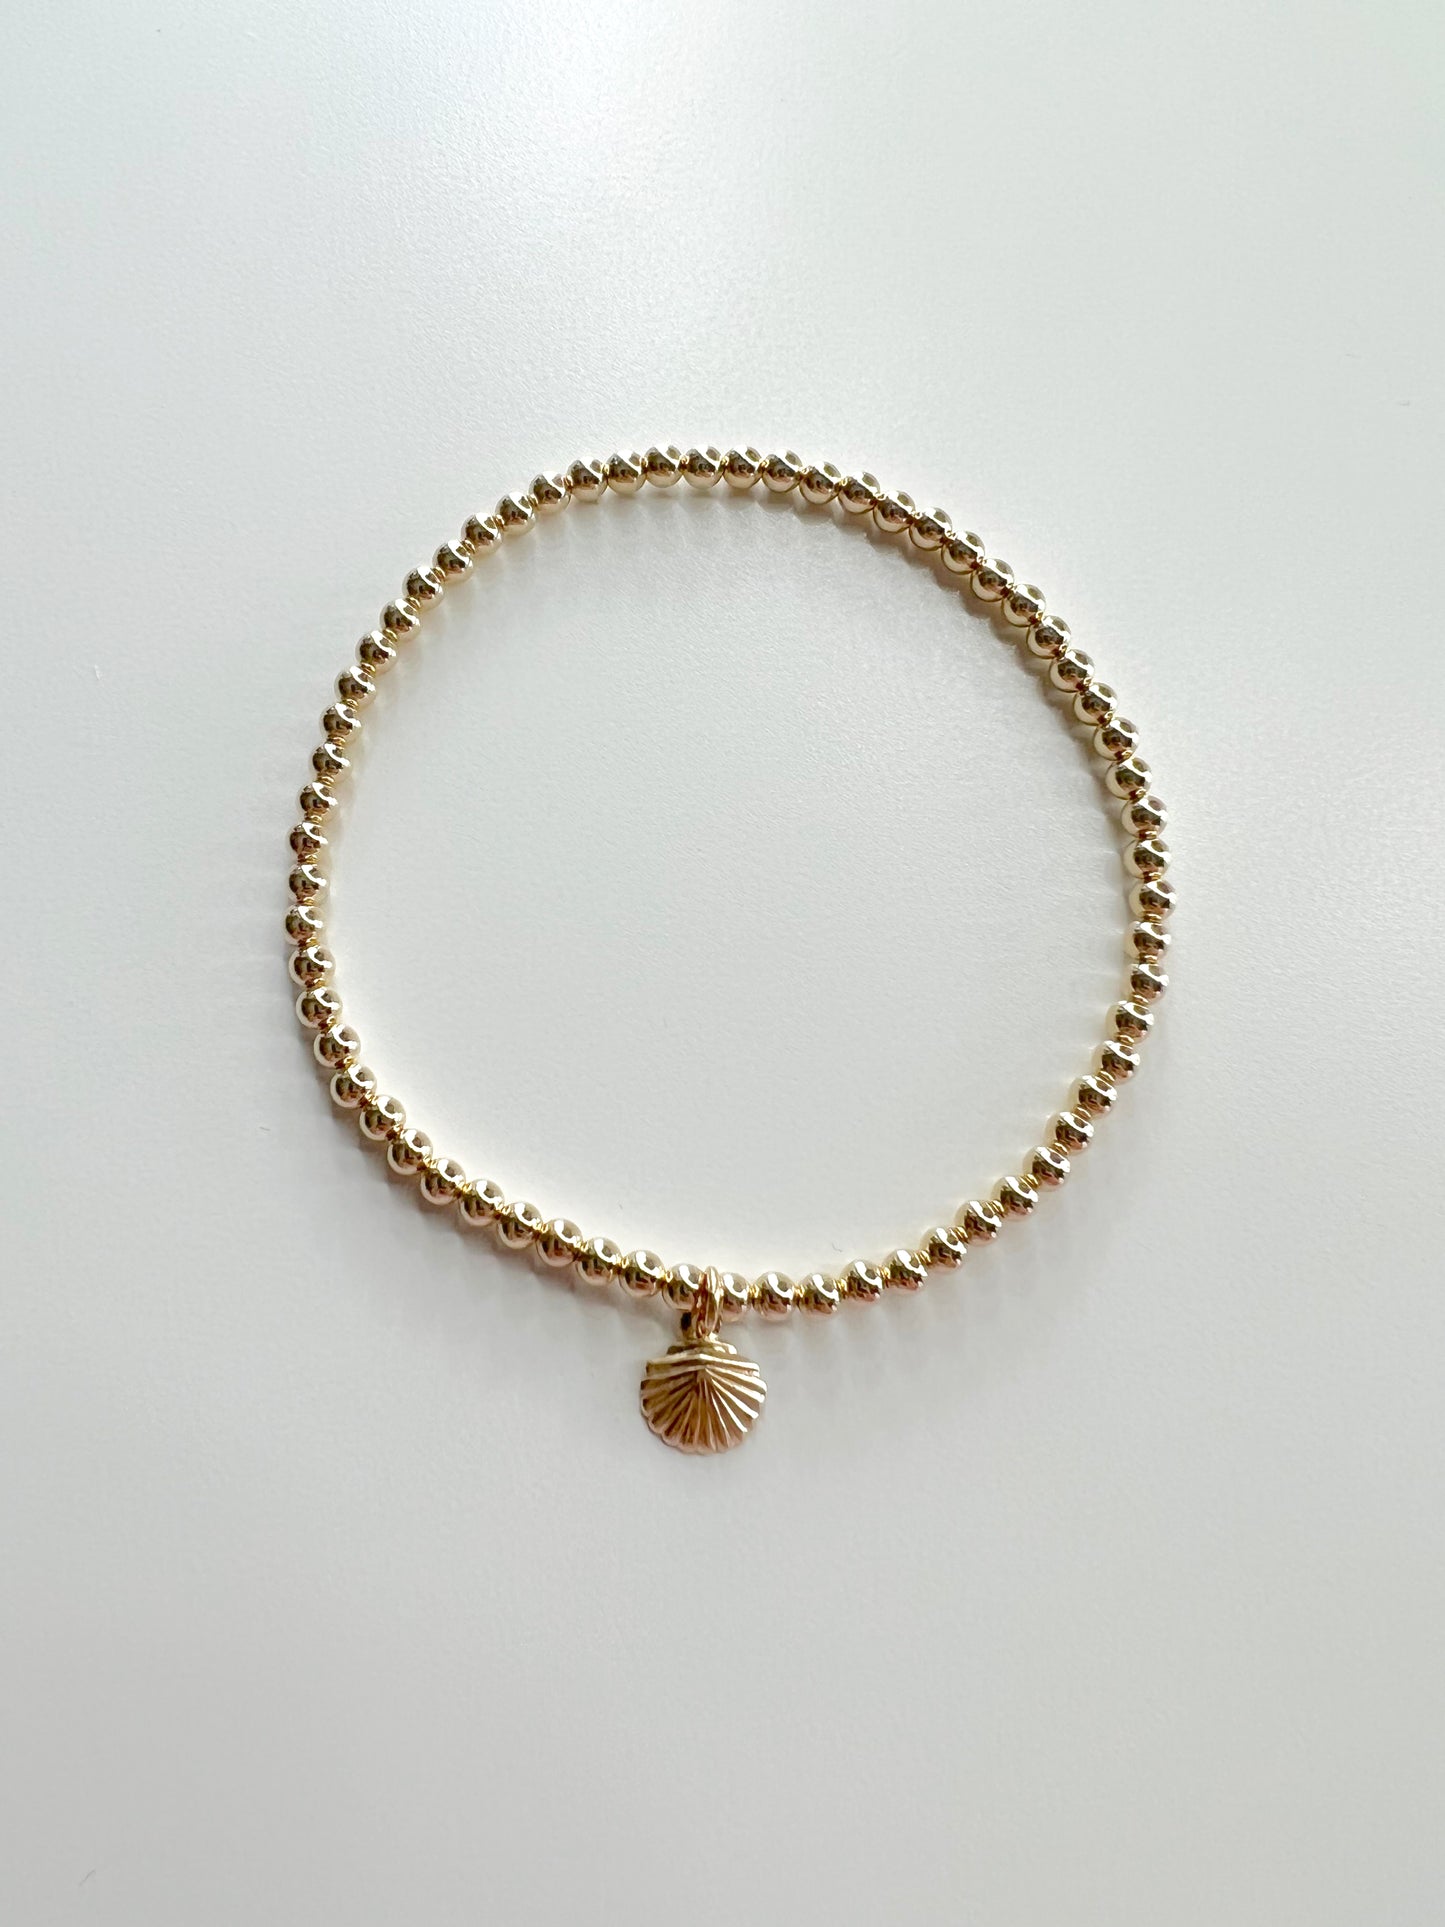 The Gold Shell Bracelet